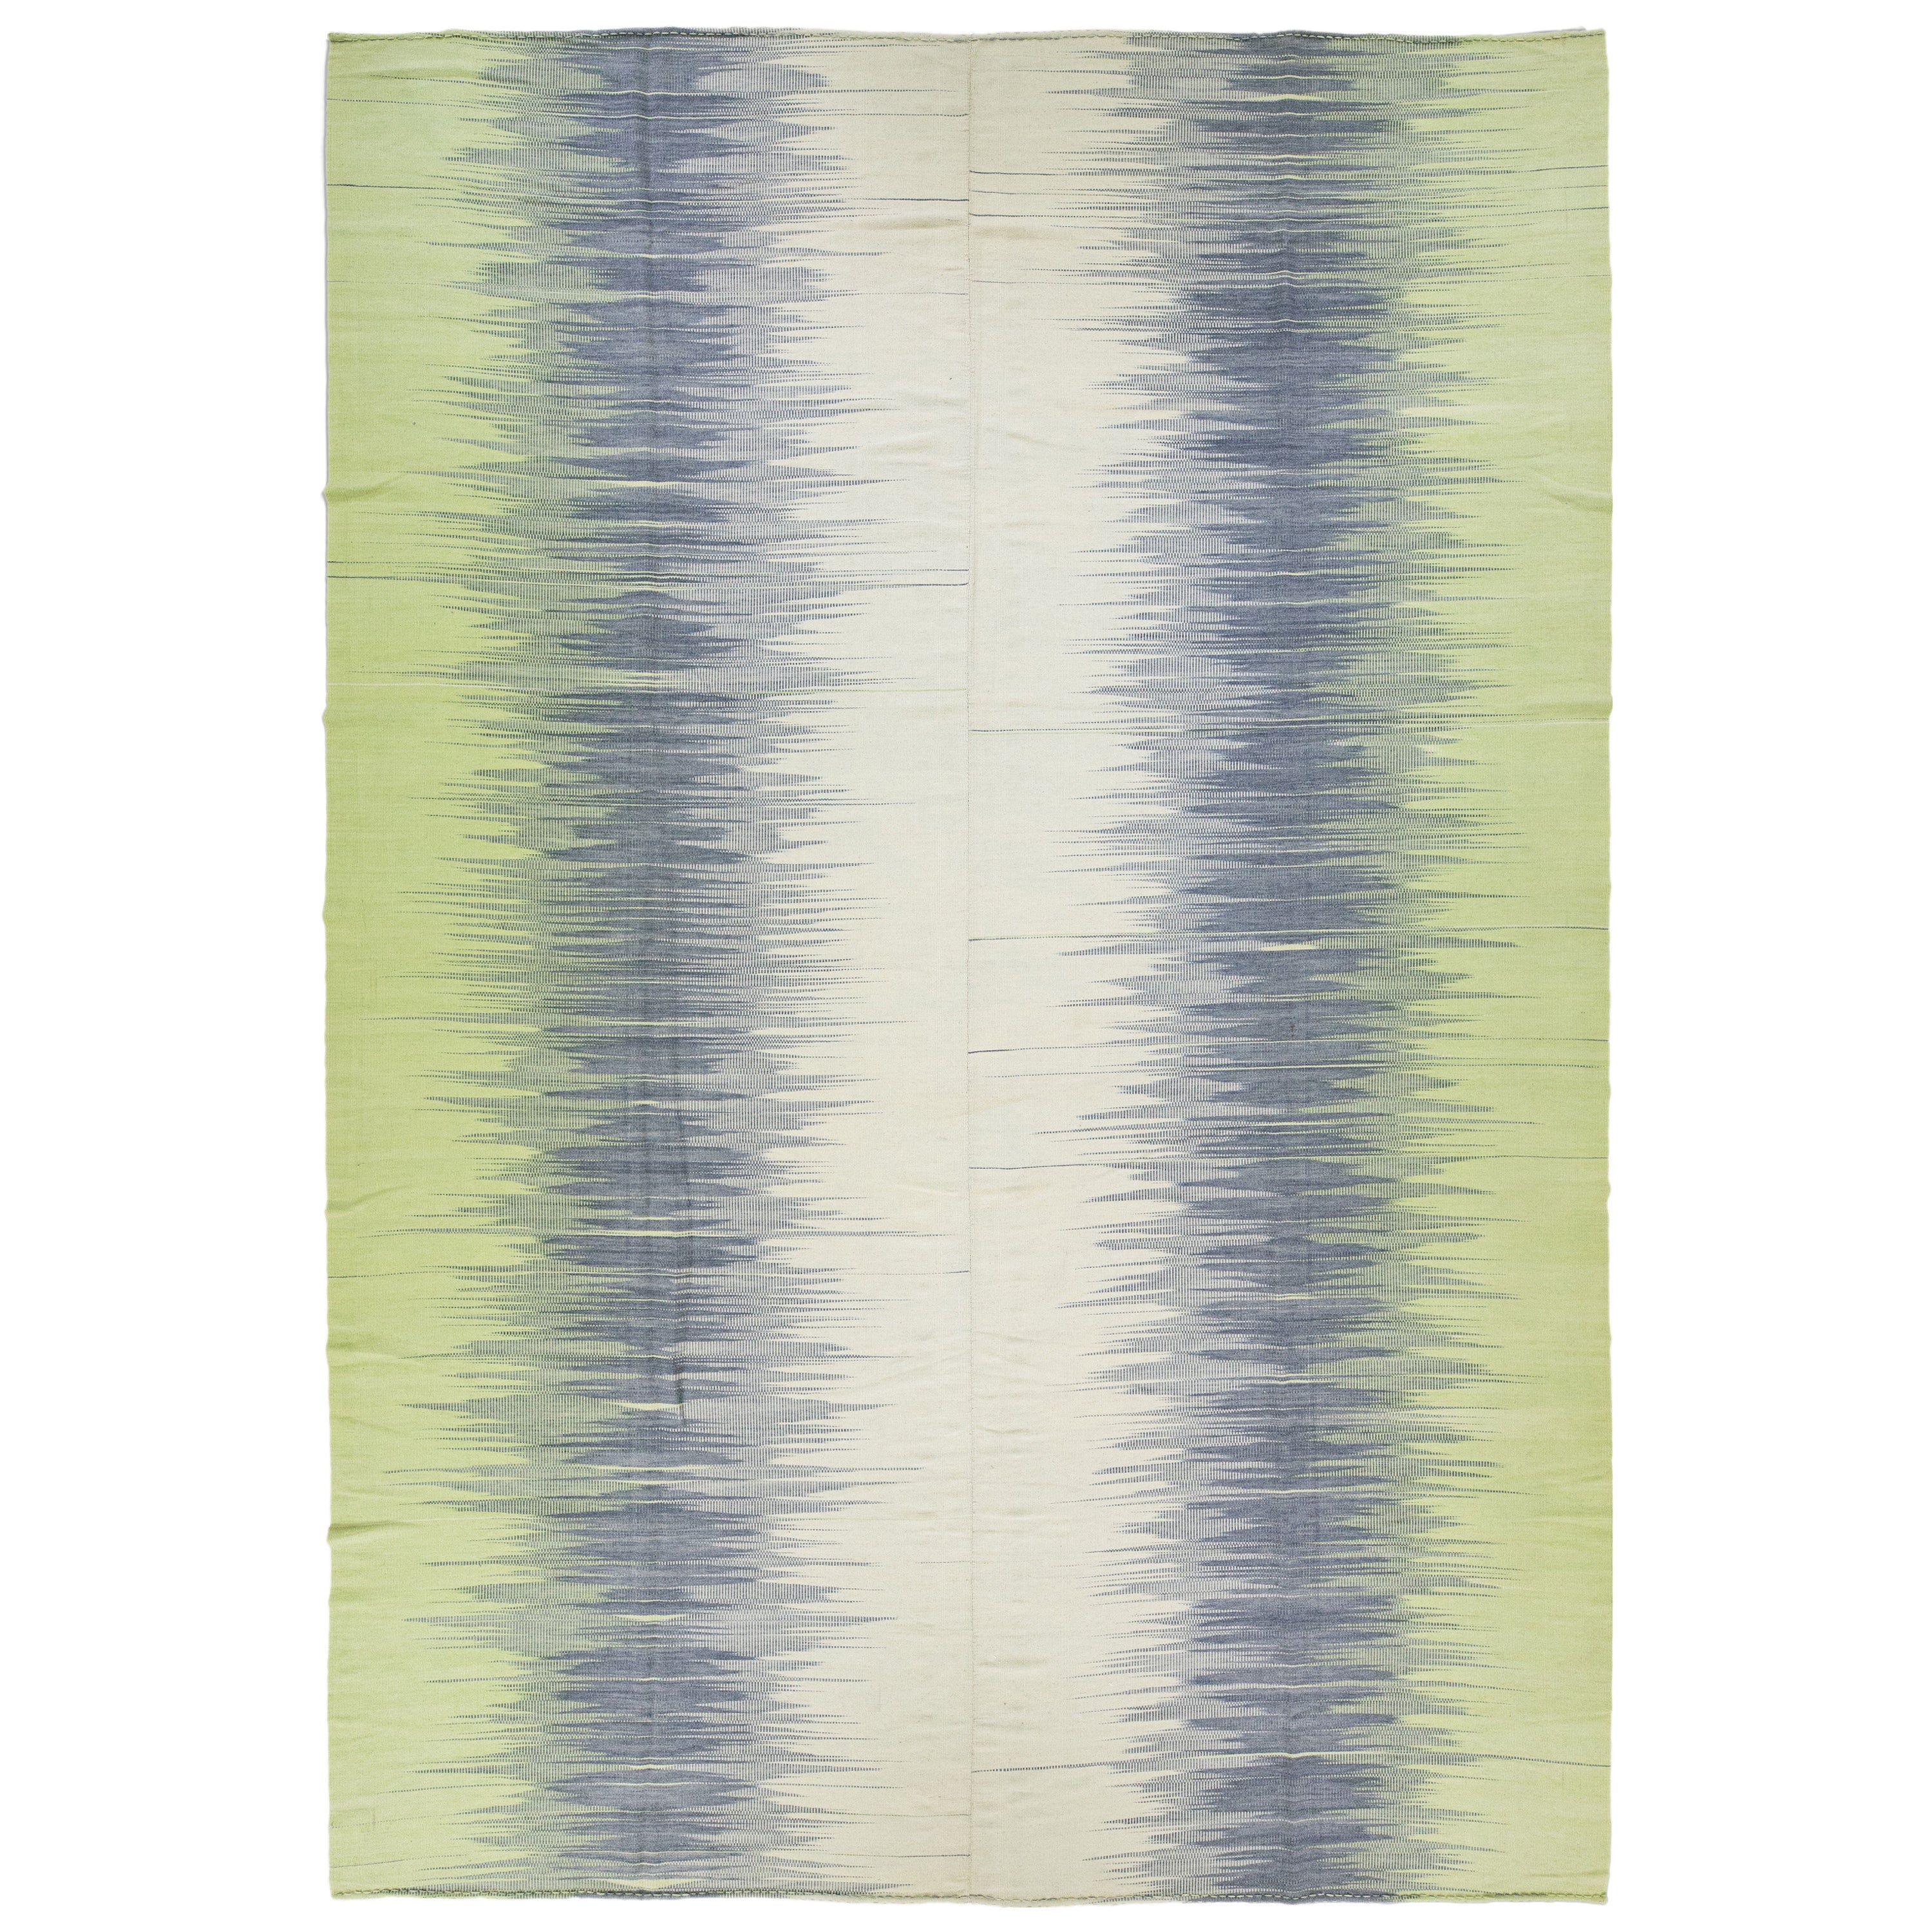 Tapis moderne Kilim vert et gris abstrait en laine surdimensionné fait à la main